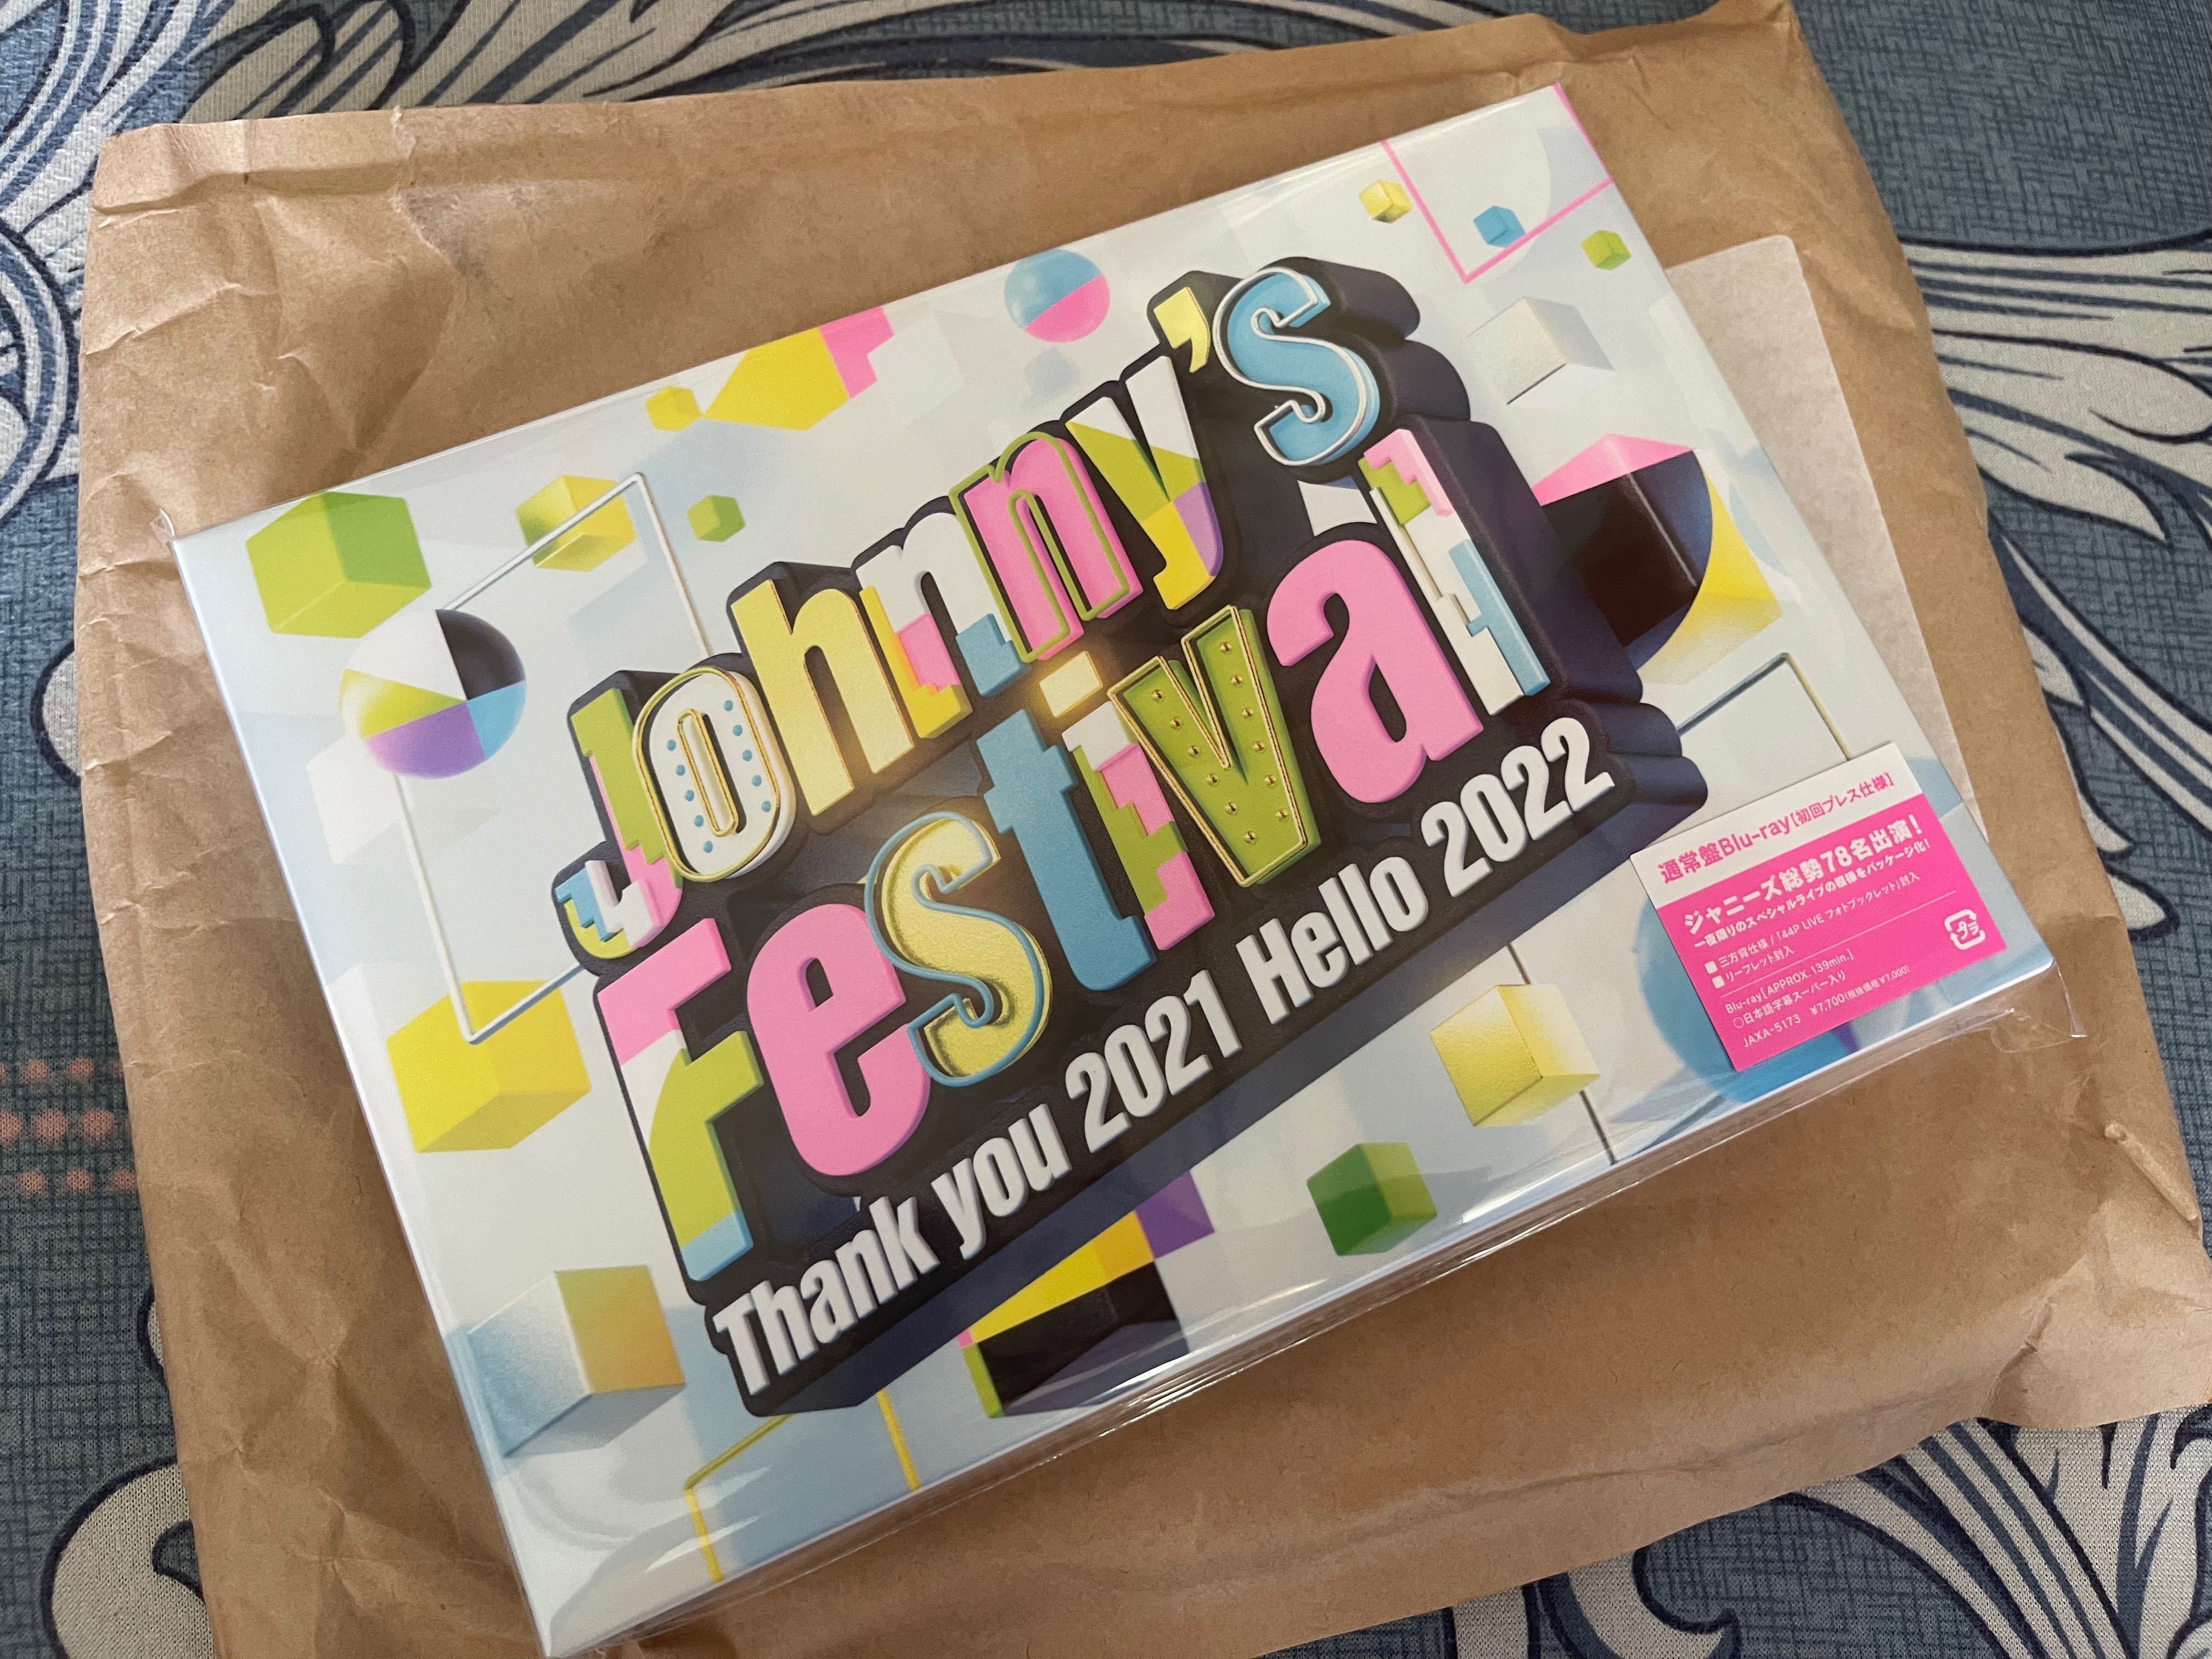 売れ筋アイテムラン Johnny's Festival～ジャニーズフェスティバル〜Blu-ray